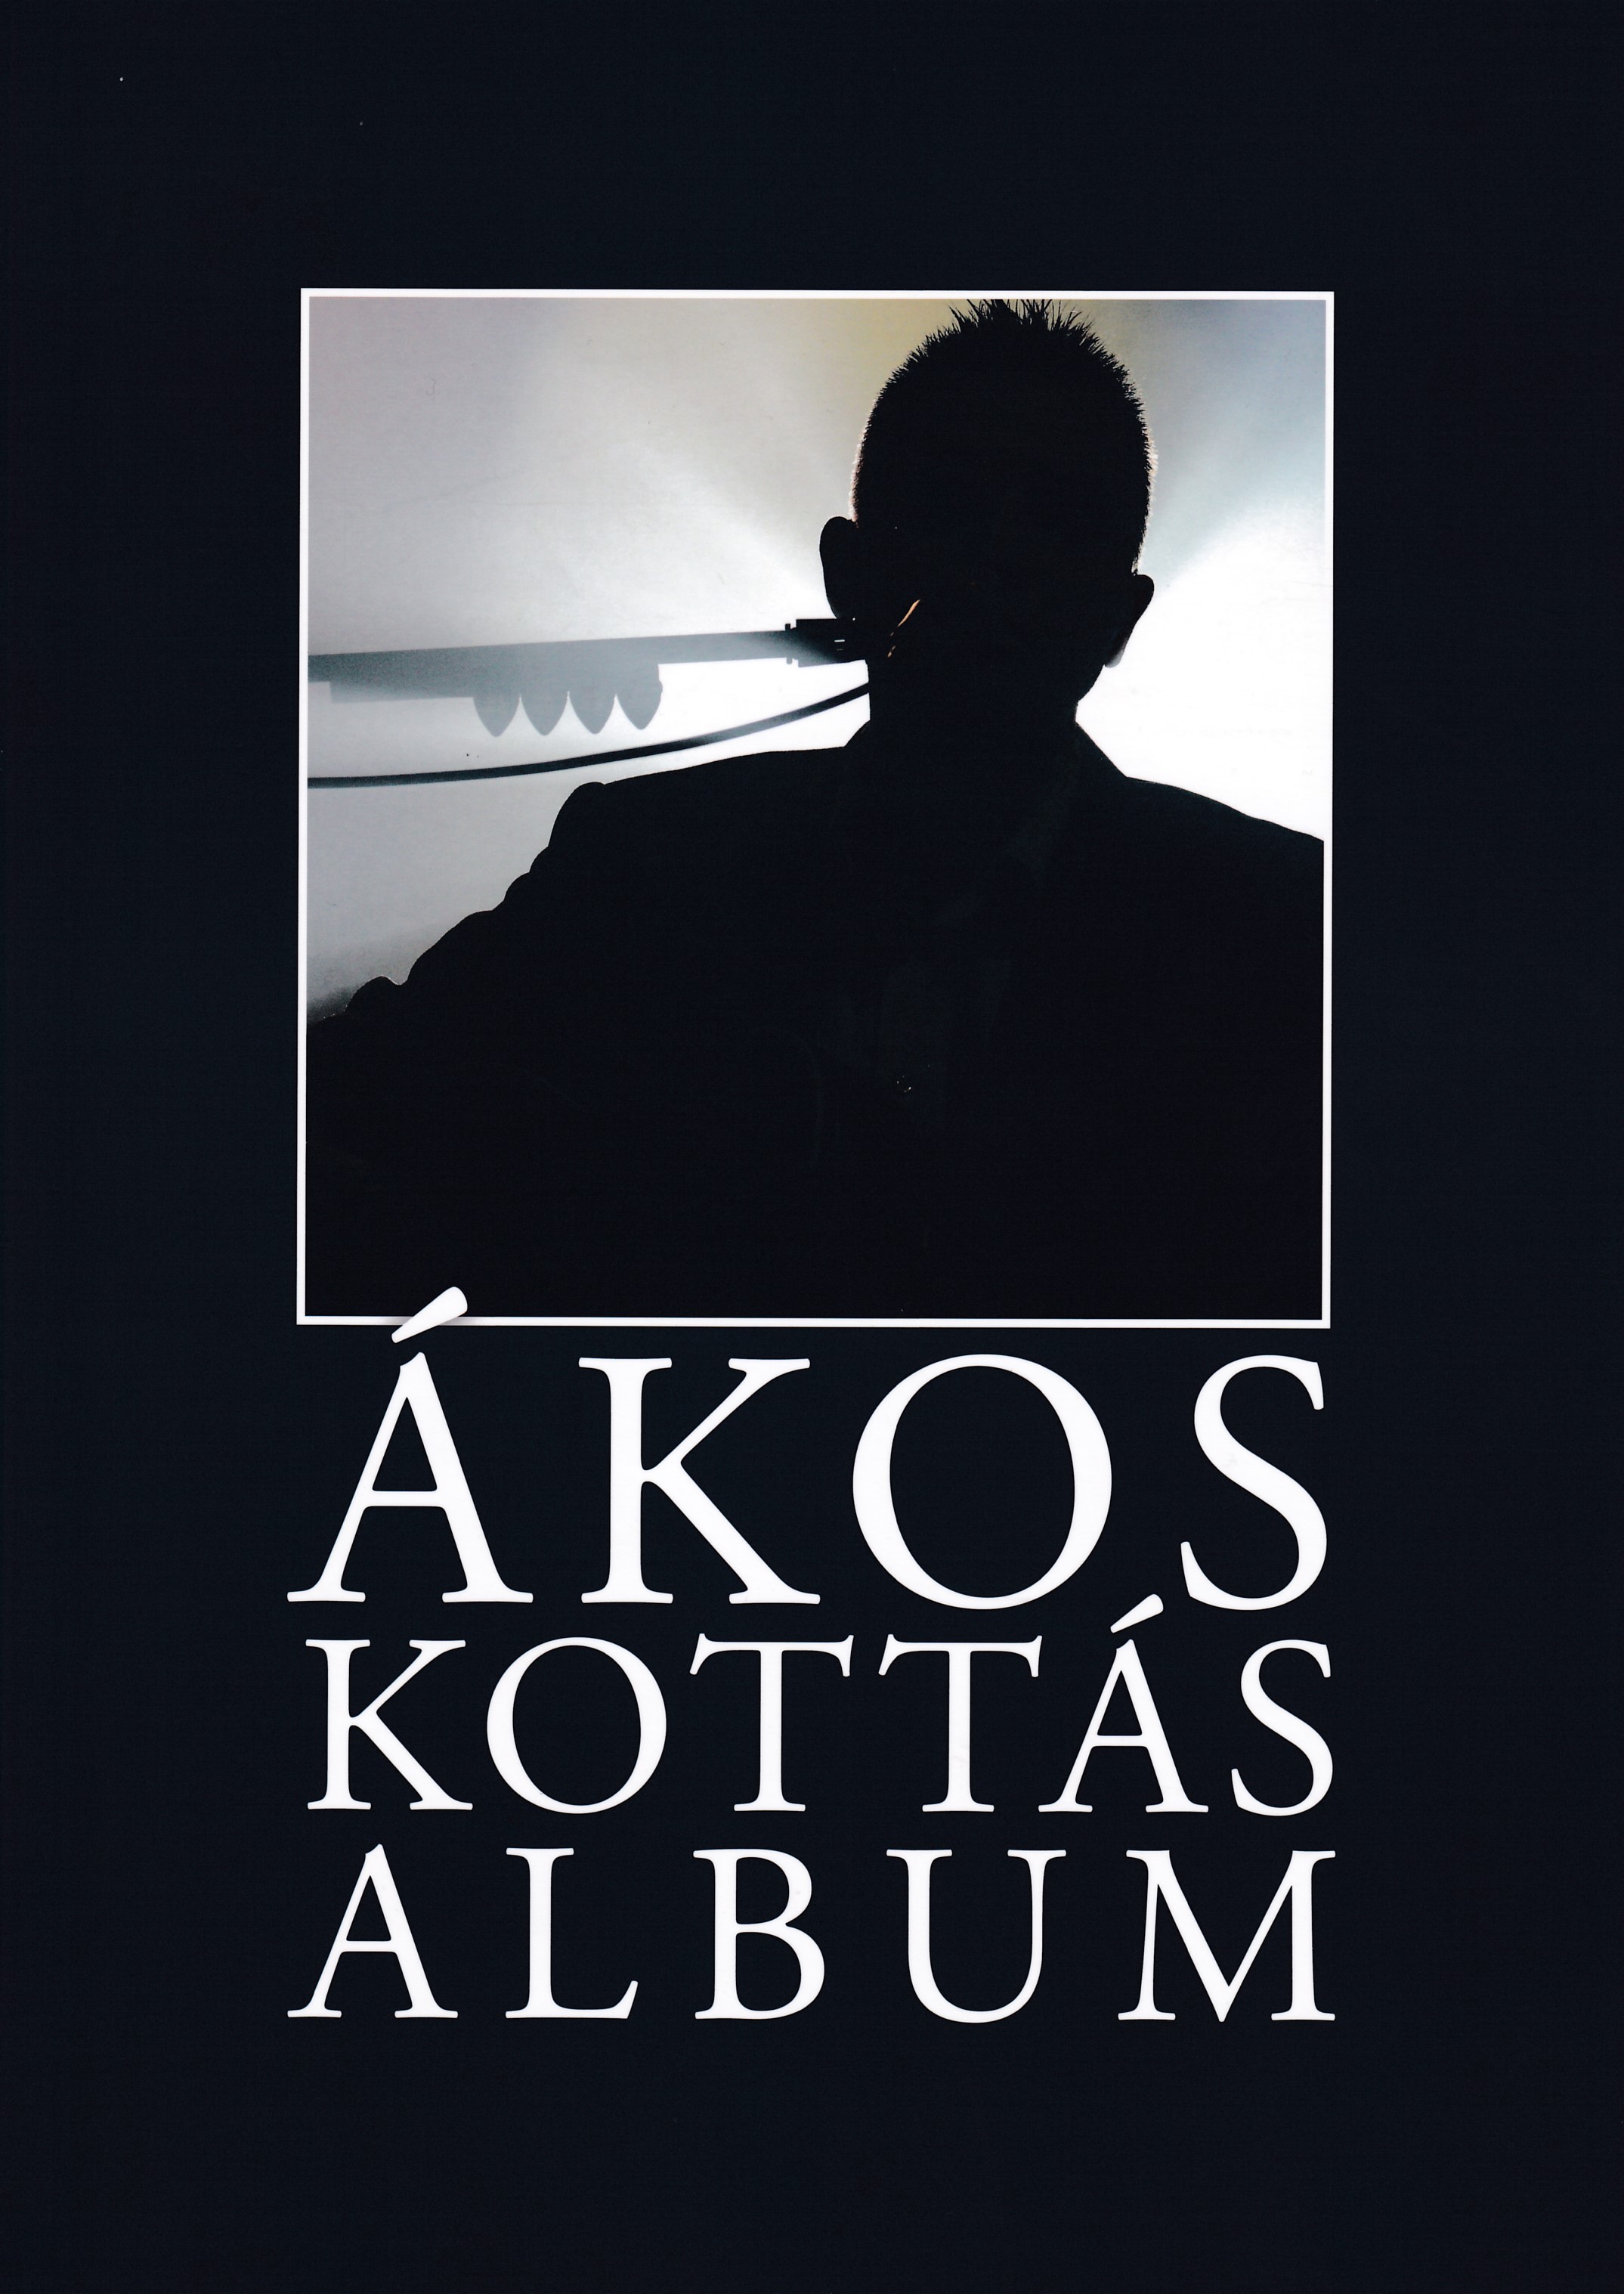 Ákos Kottás Album 2006